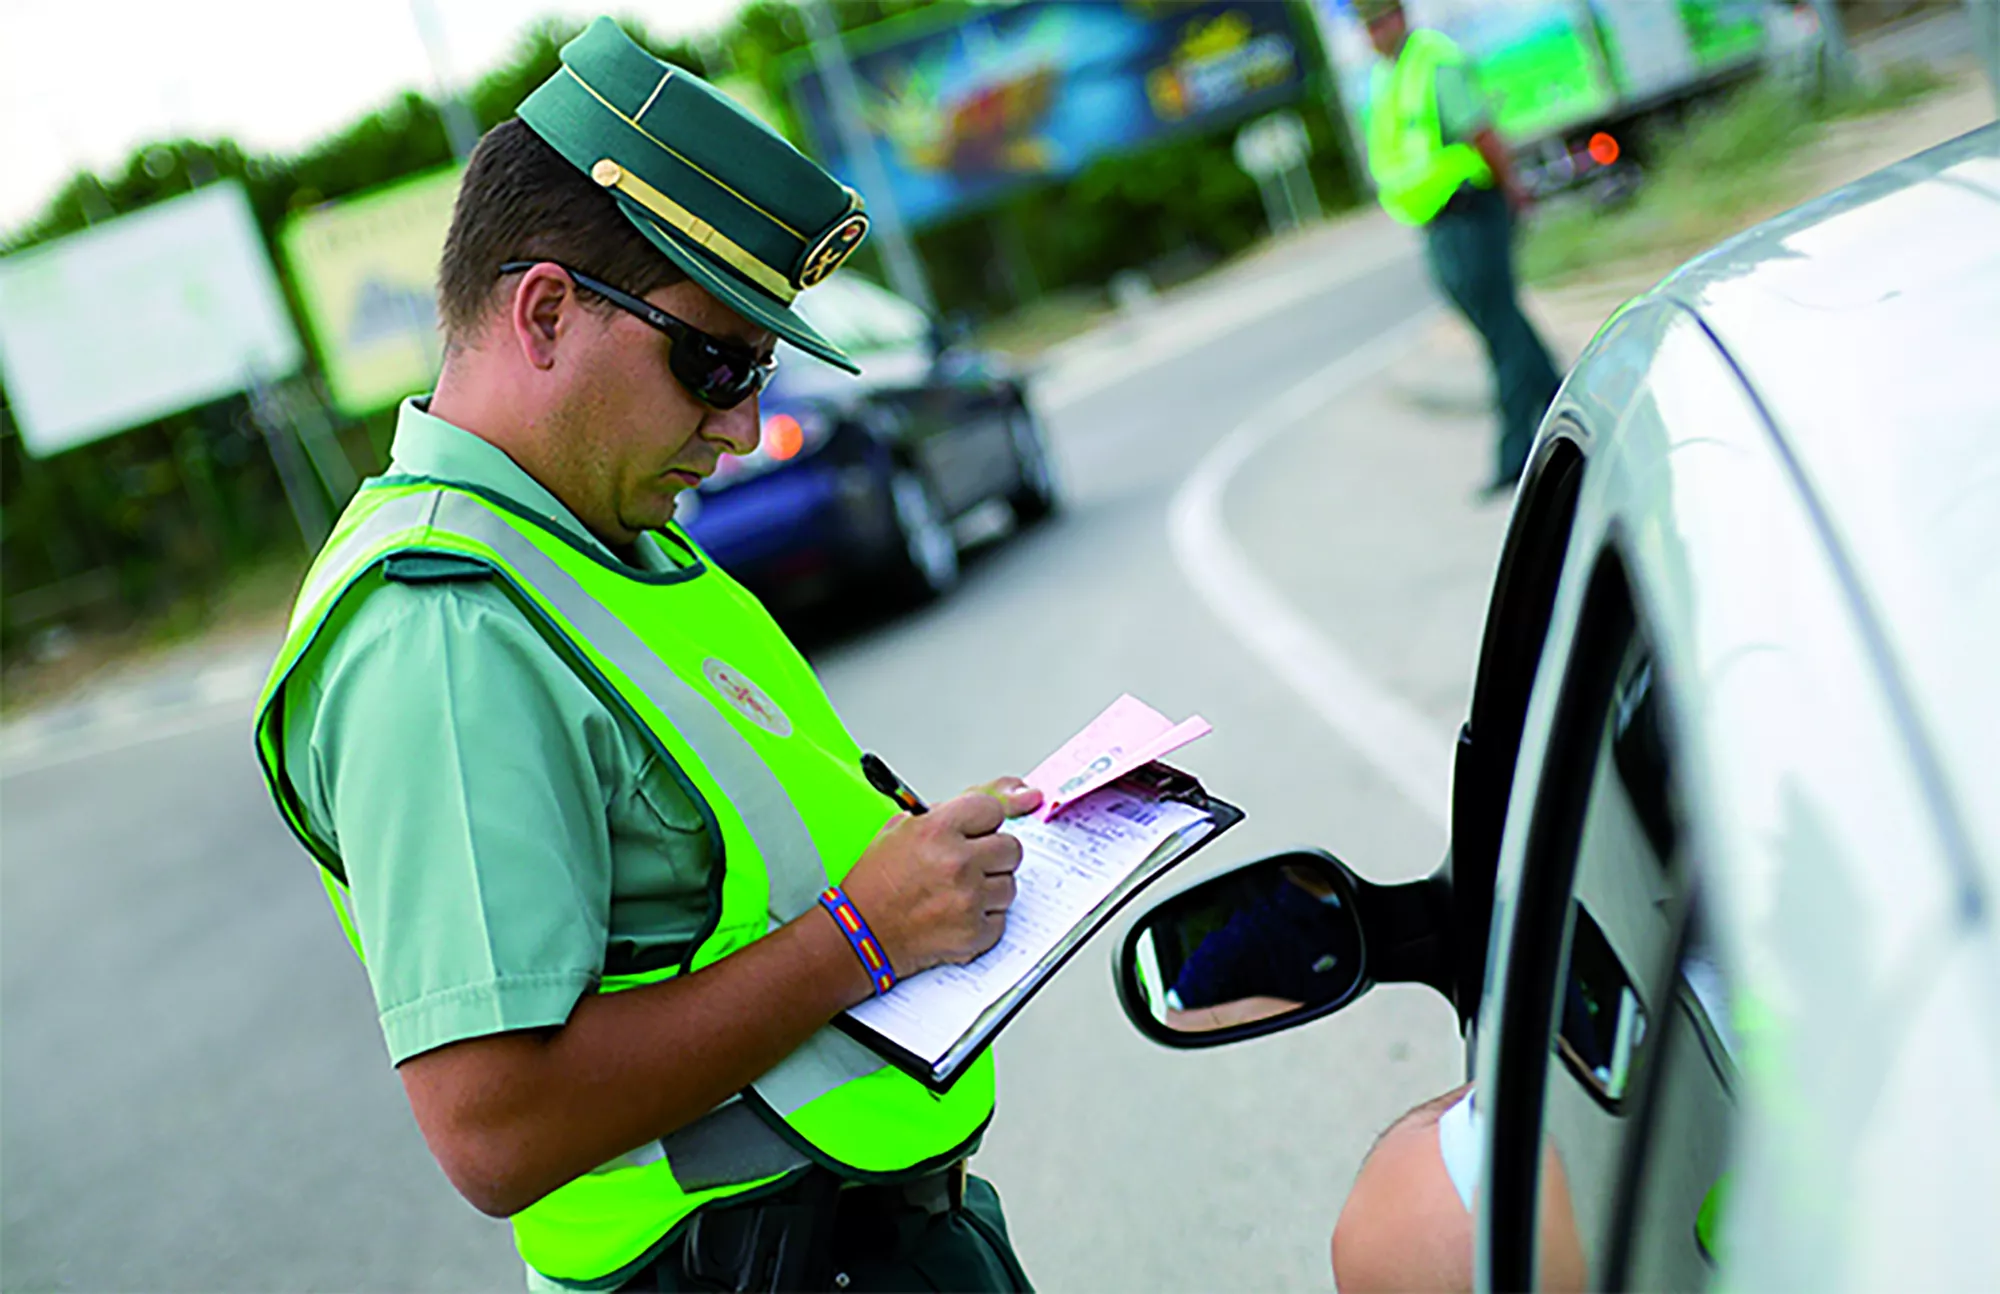 Las multas de tráfico pueden notificarse al instante o con posterioridad a la infracción.